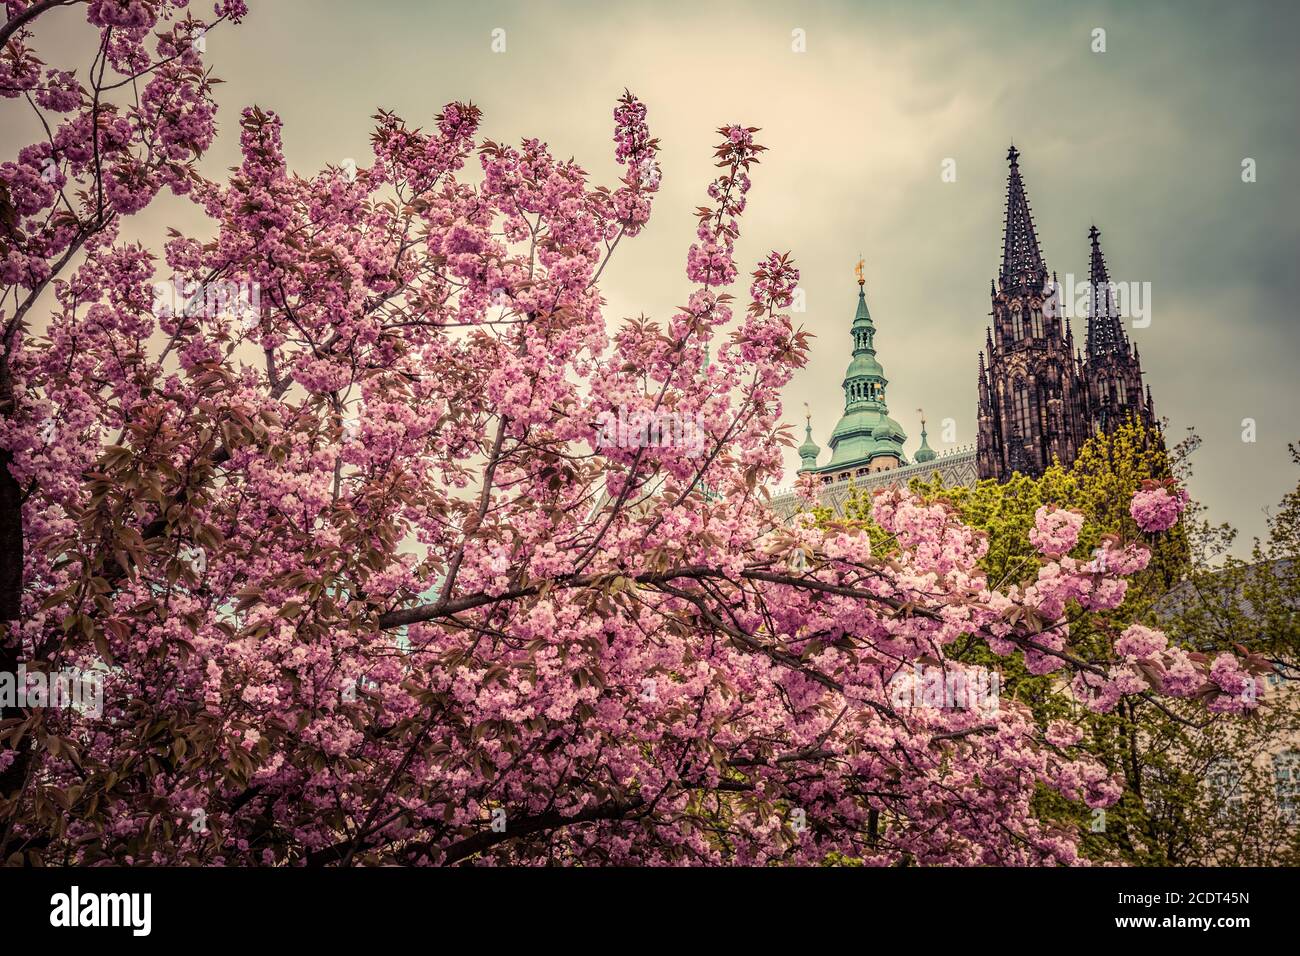 Château de Prague avec la cathédrale Saint-Vitus, Hradcany, République Tchèque vu des jardins de printemps. Banque D'Images